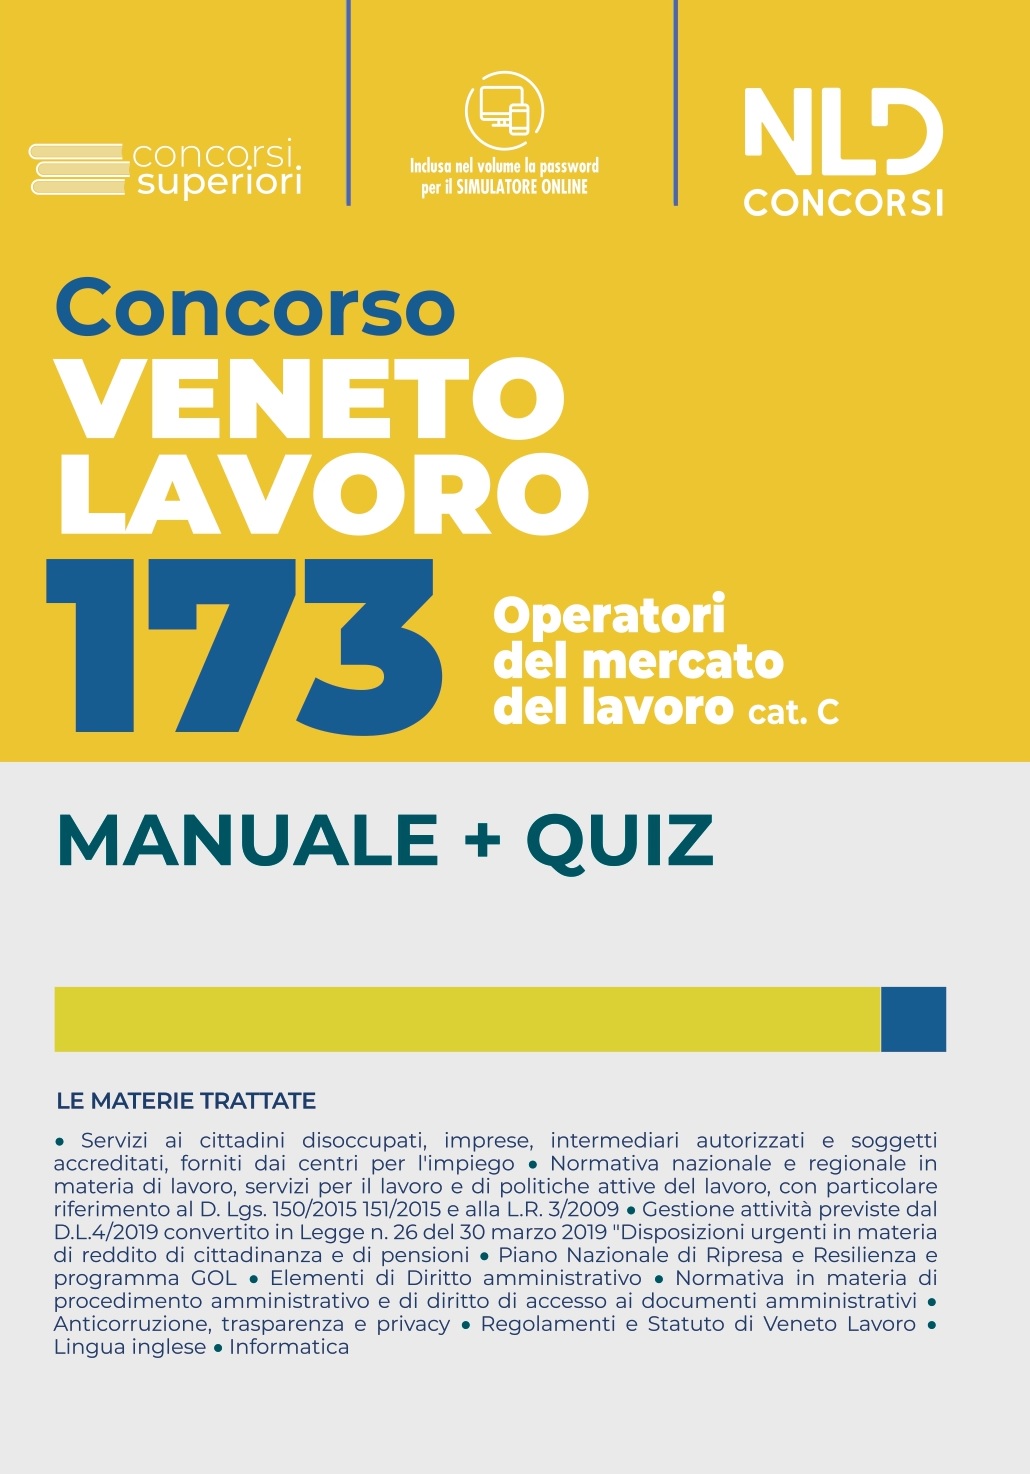 Concorso Veneto Lavoro â€“ 173 Operatori Del Mercato del Lavoro Cat. C â€“ Manuale + Quiz Completo